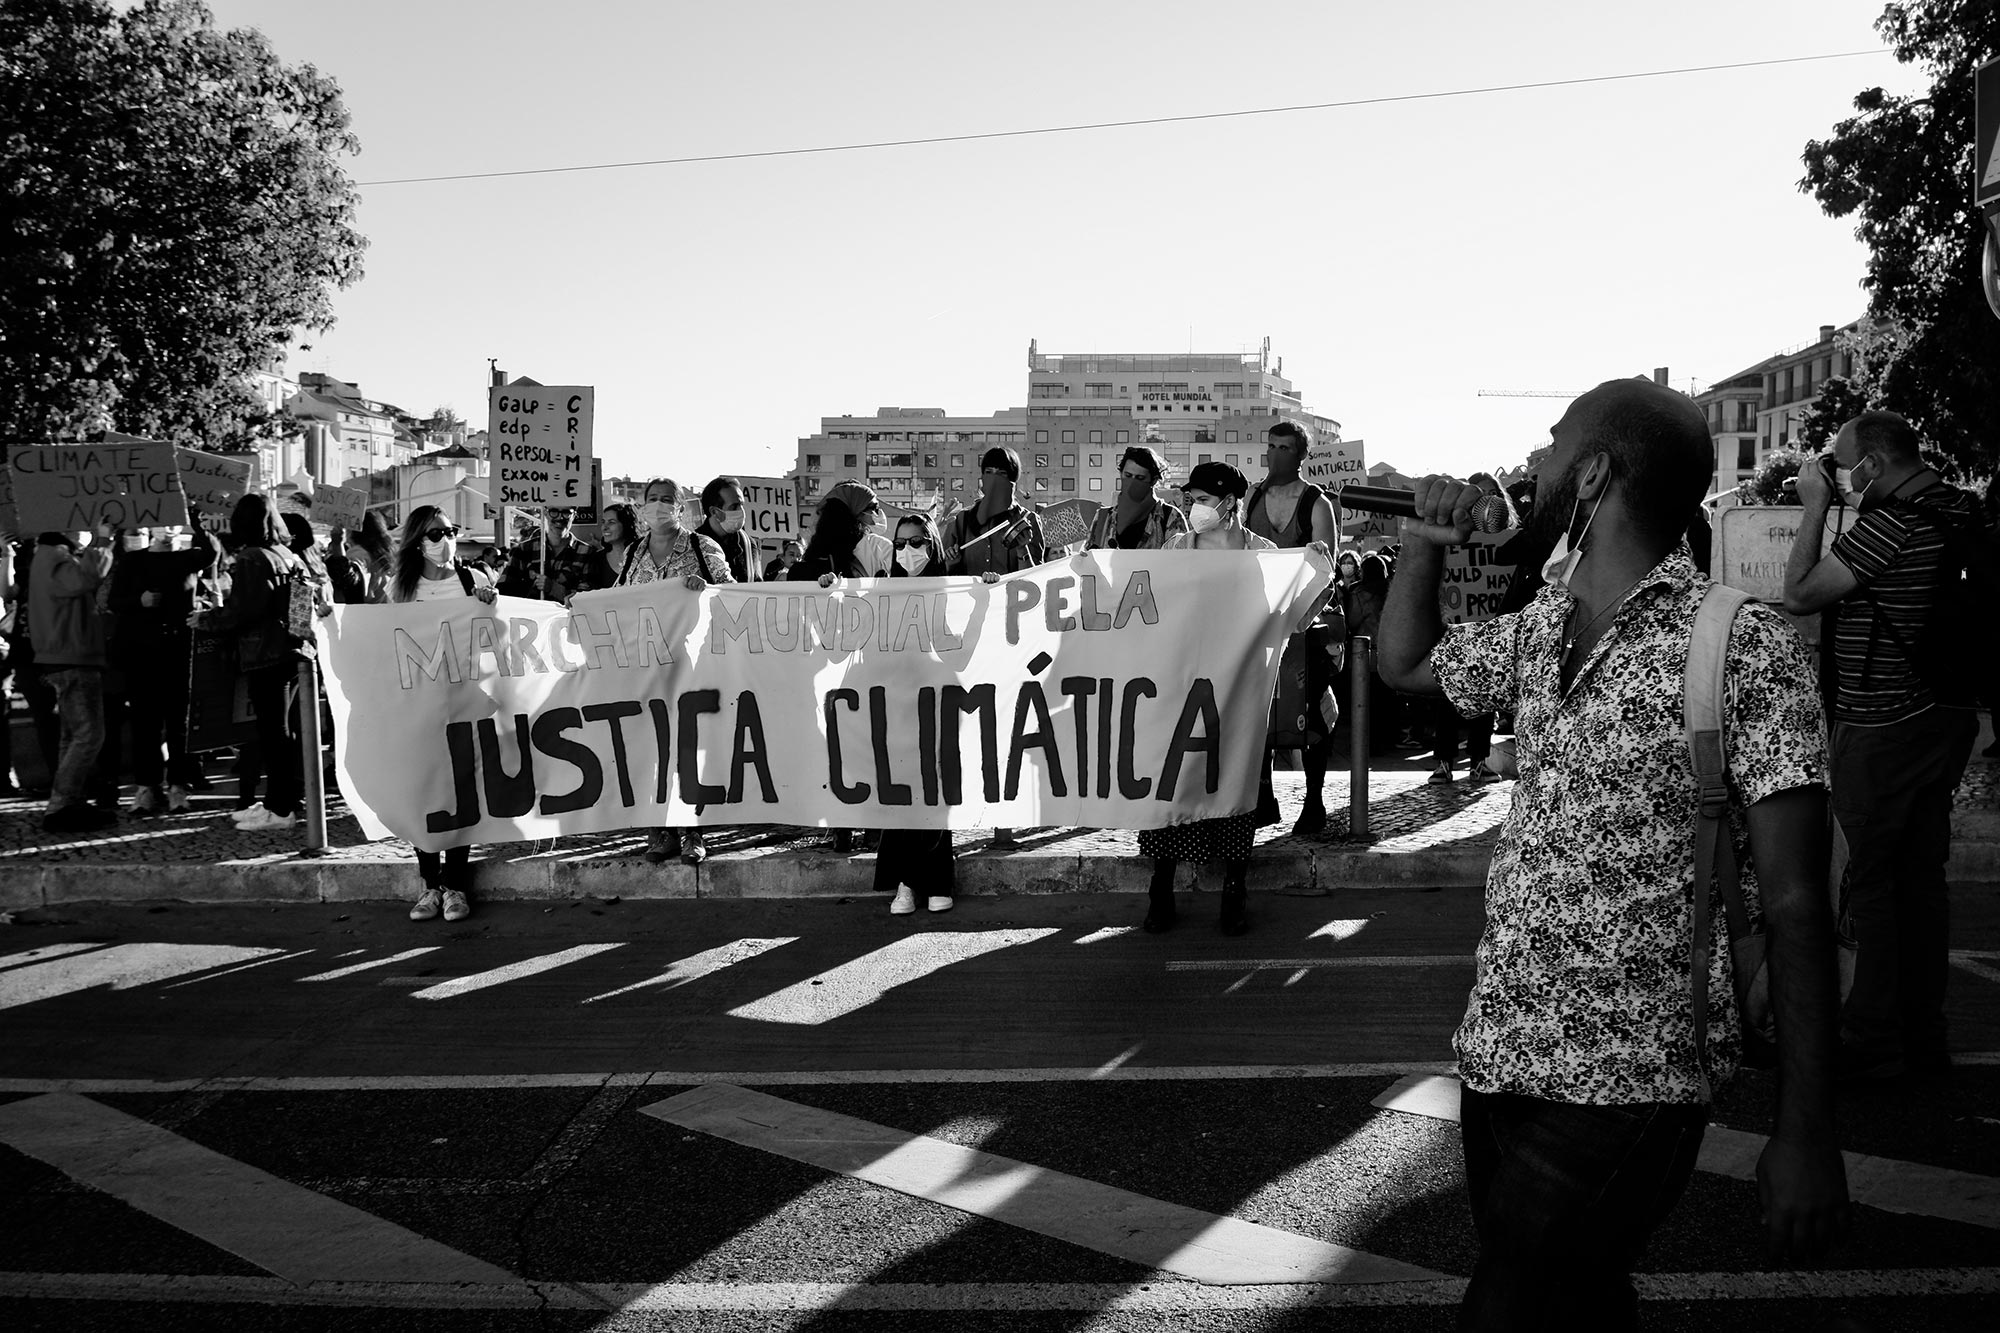 “Mudar o sistema, mudar o clima”. Apontamentos sobre a Marcha pela Justiça Climática em Lisboa